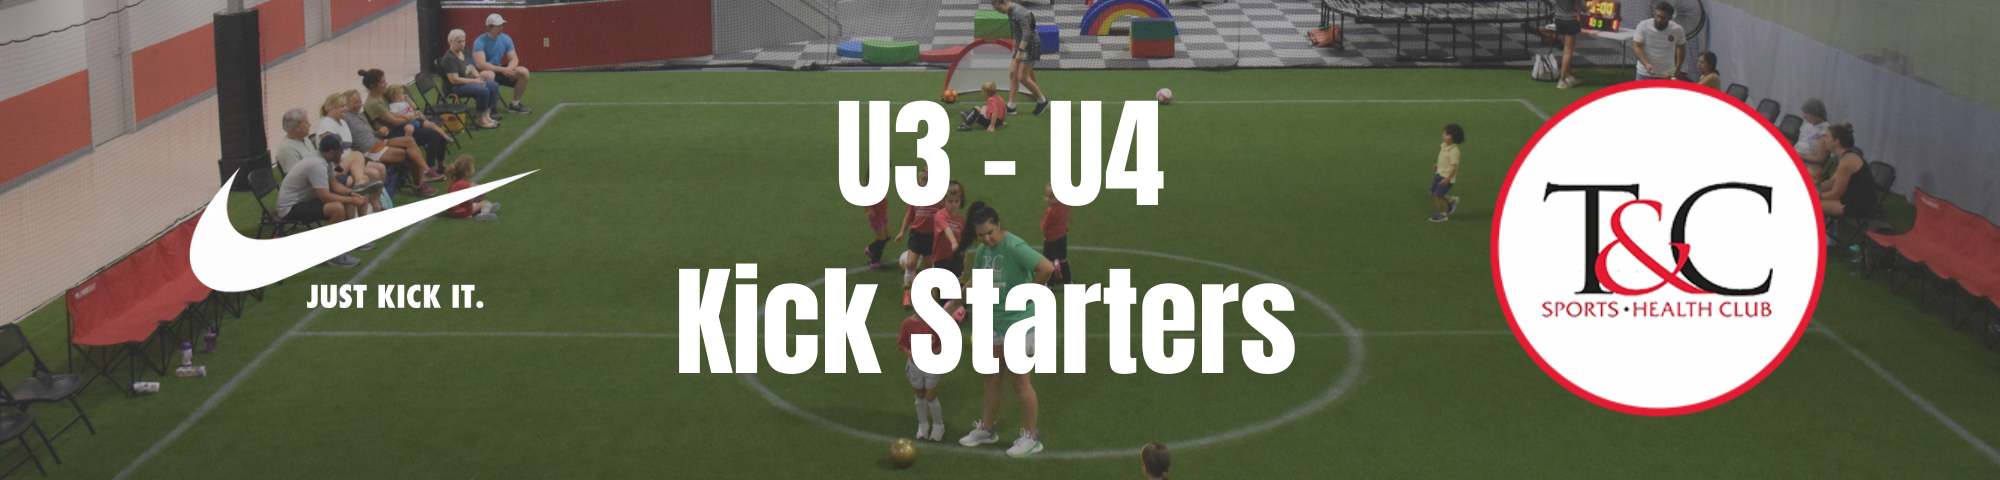 T&C Kick Starter Soccer Program